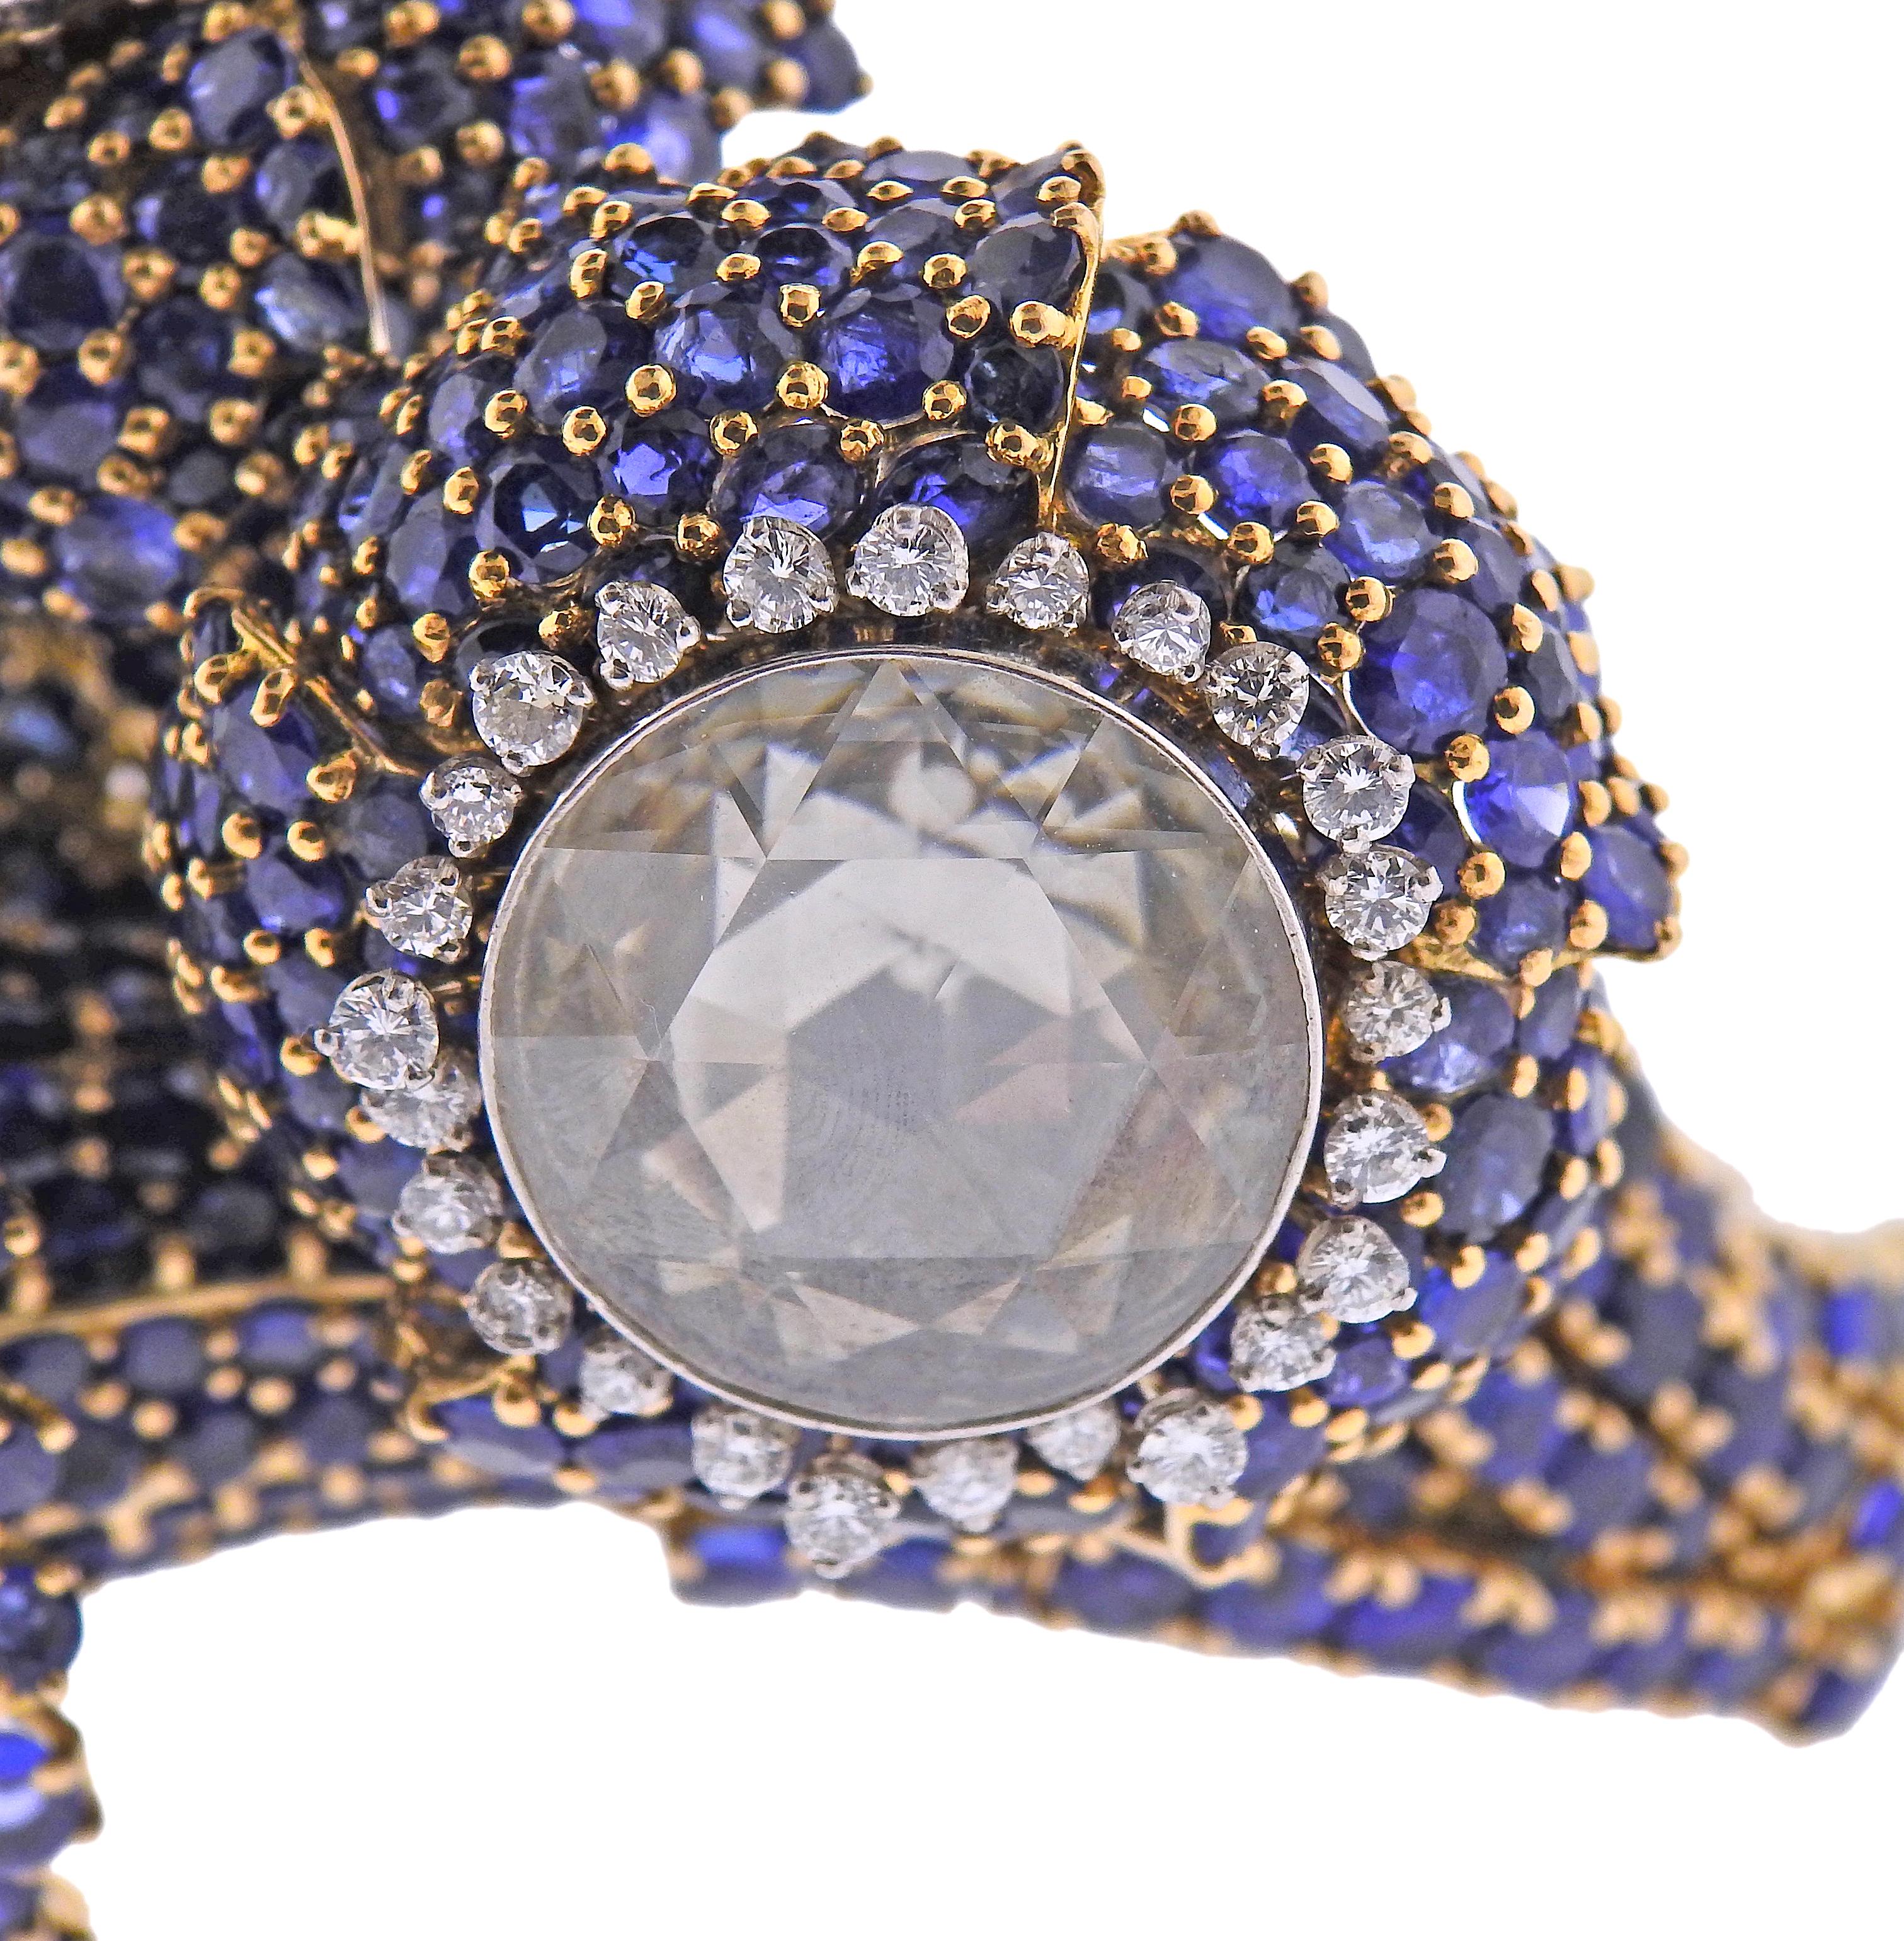 Magnifique bracelet en or 18 carats de David Webb, avec trois diamants taillés en rose - mesurant 17,1 mm ; 20,2 mm et 18,5 mm de diamètre. Entouré de saphirs bleus vibrants et d'environ 1,50ctw de diamants ronds. Le bracelet convient à un poignet